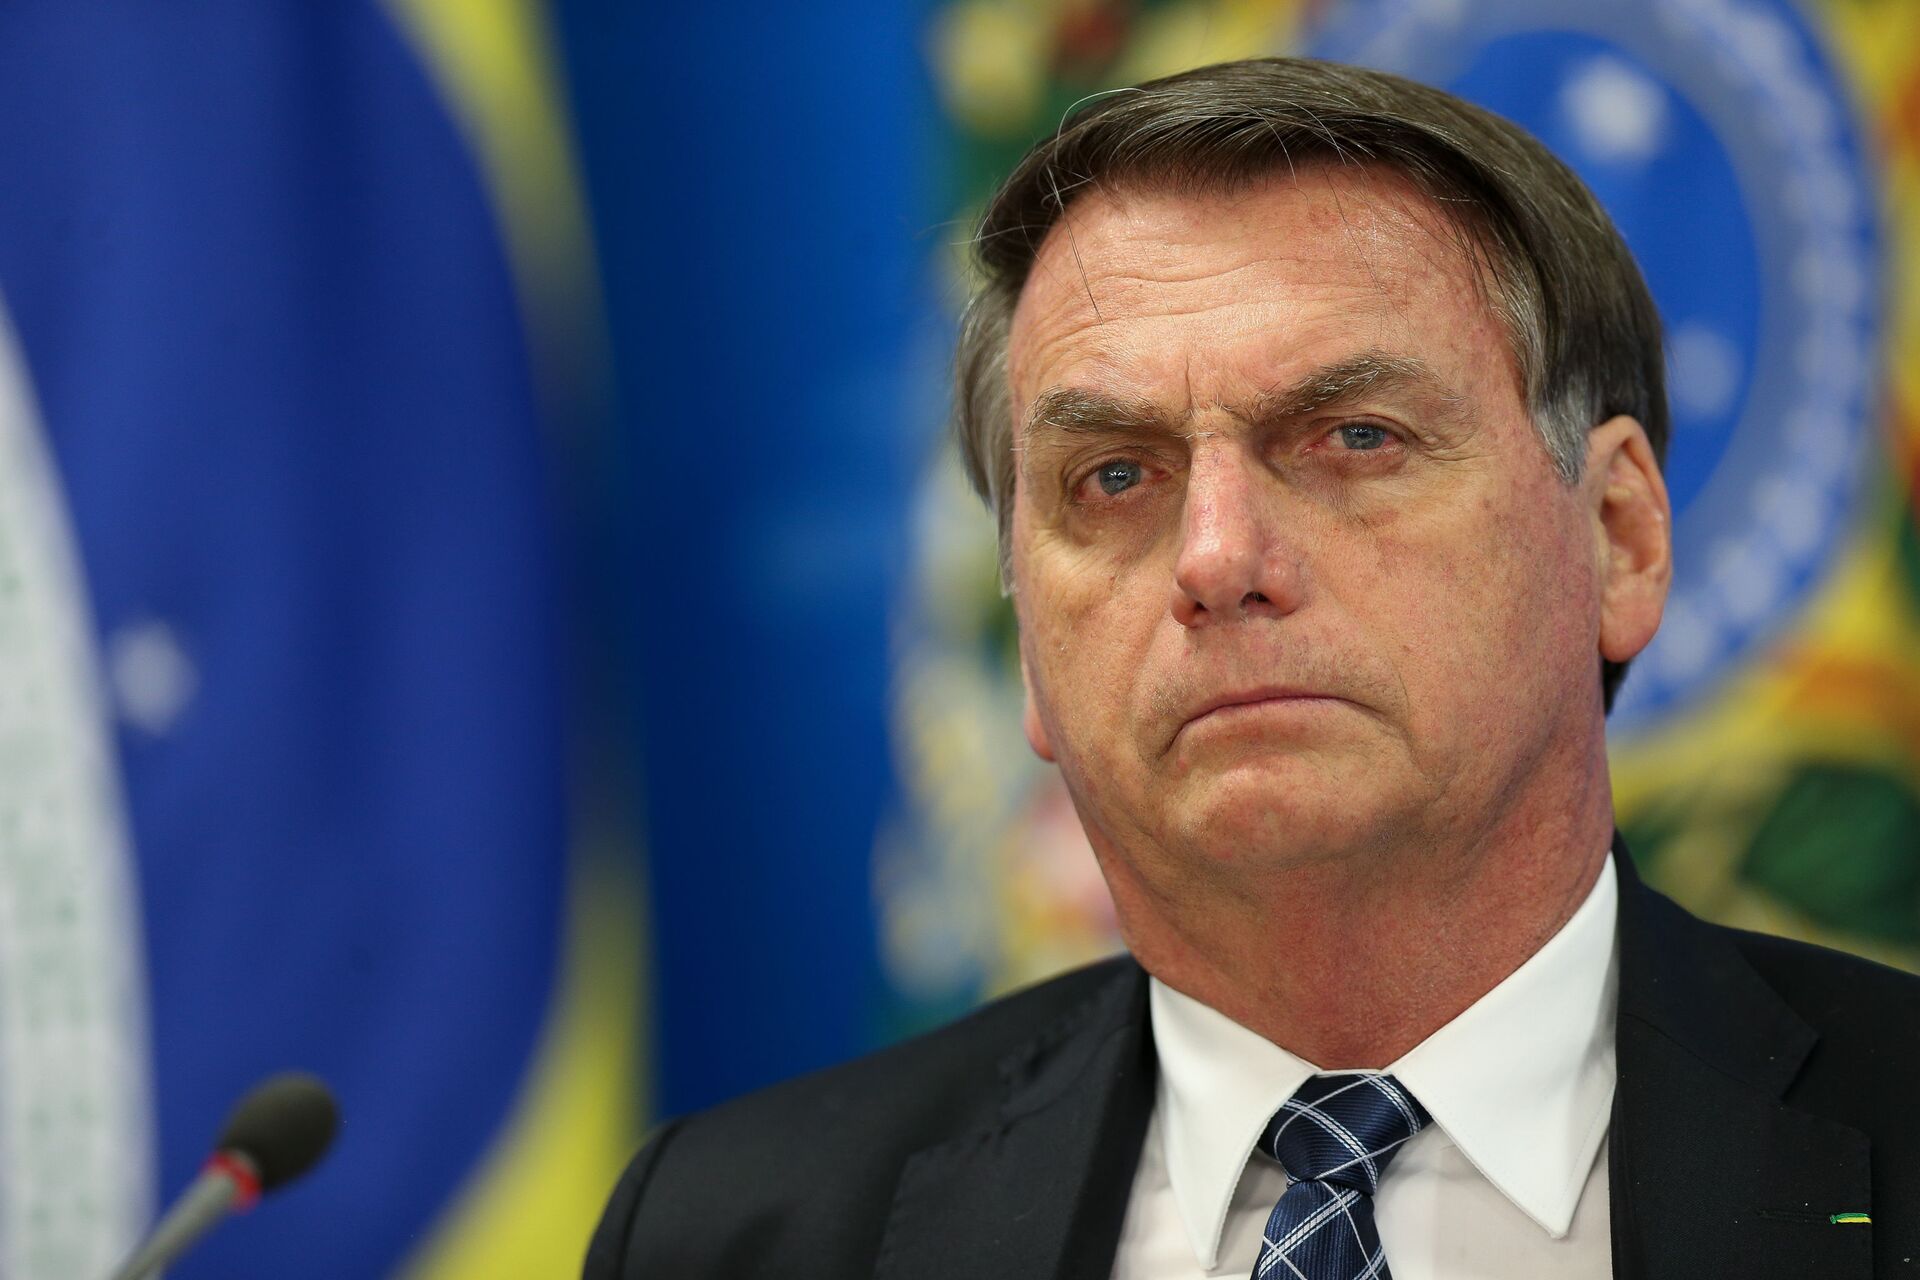 OAB pede que STF obrigue Bolsonaro a comprar vacinas para imunização em massa - Sputnik Brasil, 1920, 20.03.2021